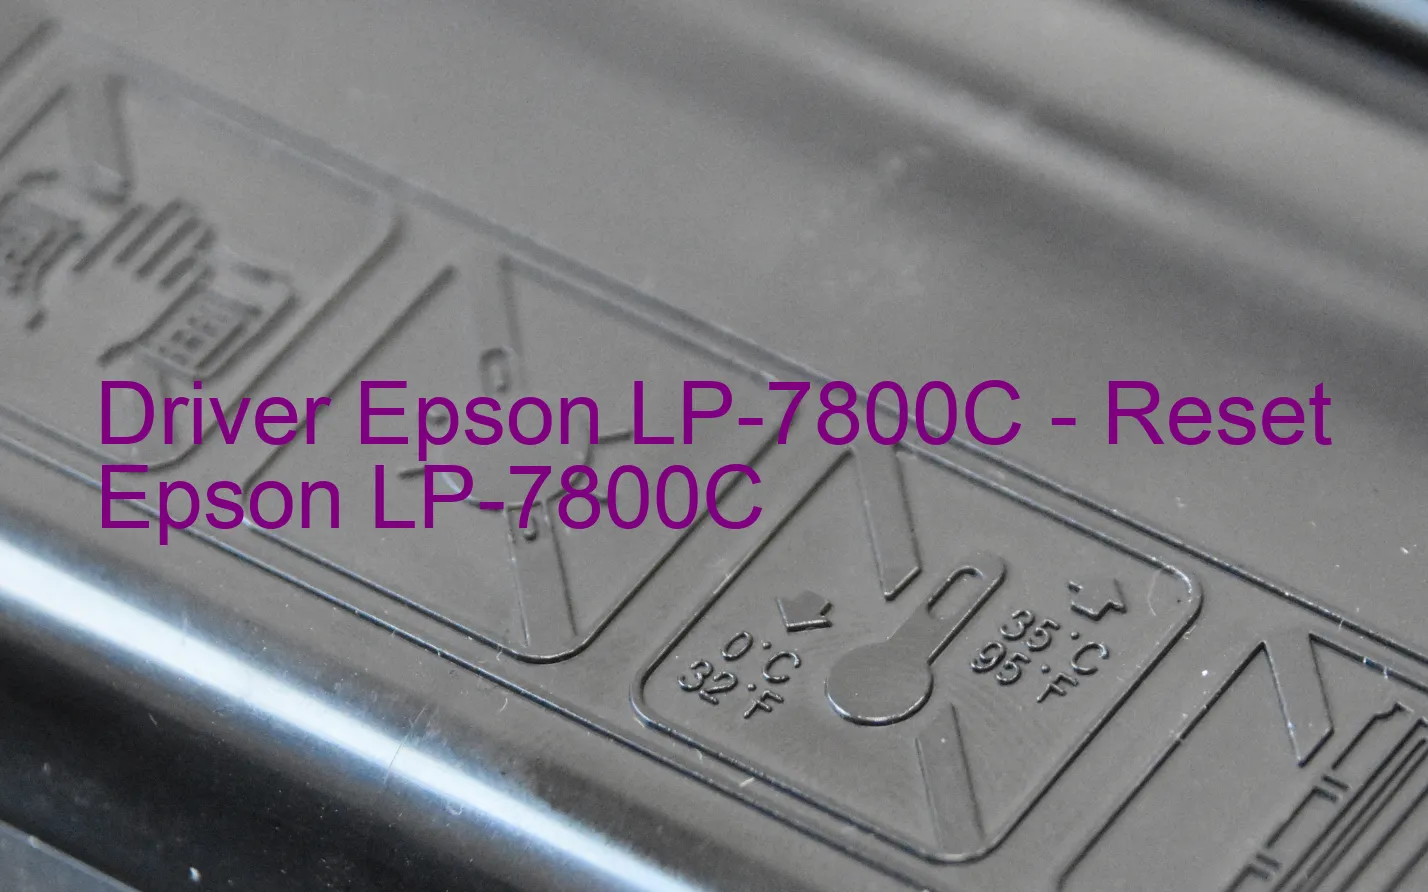 Epson LP-7800Cのドライバー、Epson LP-7800Cのリセットソフトウェア